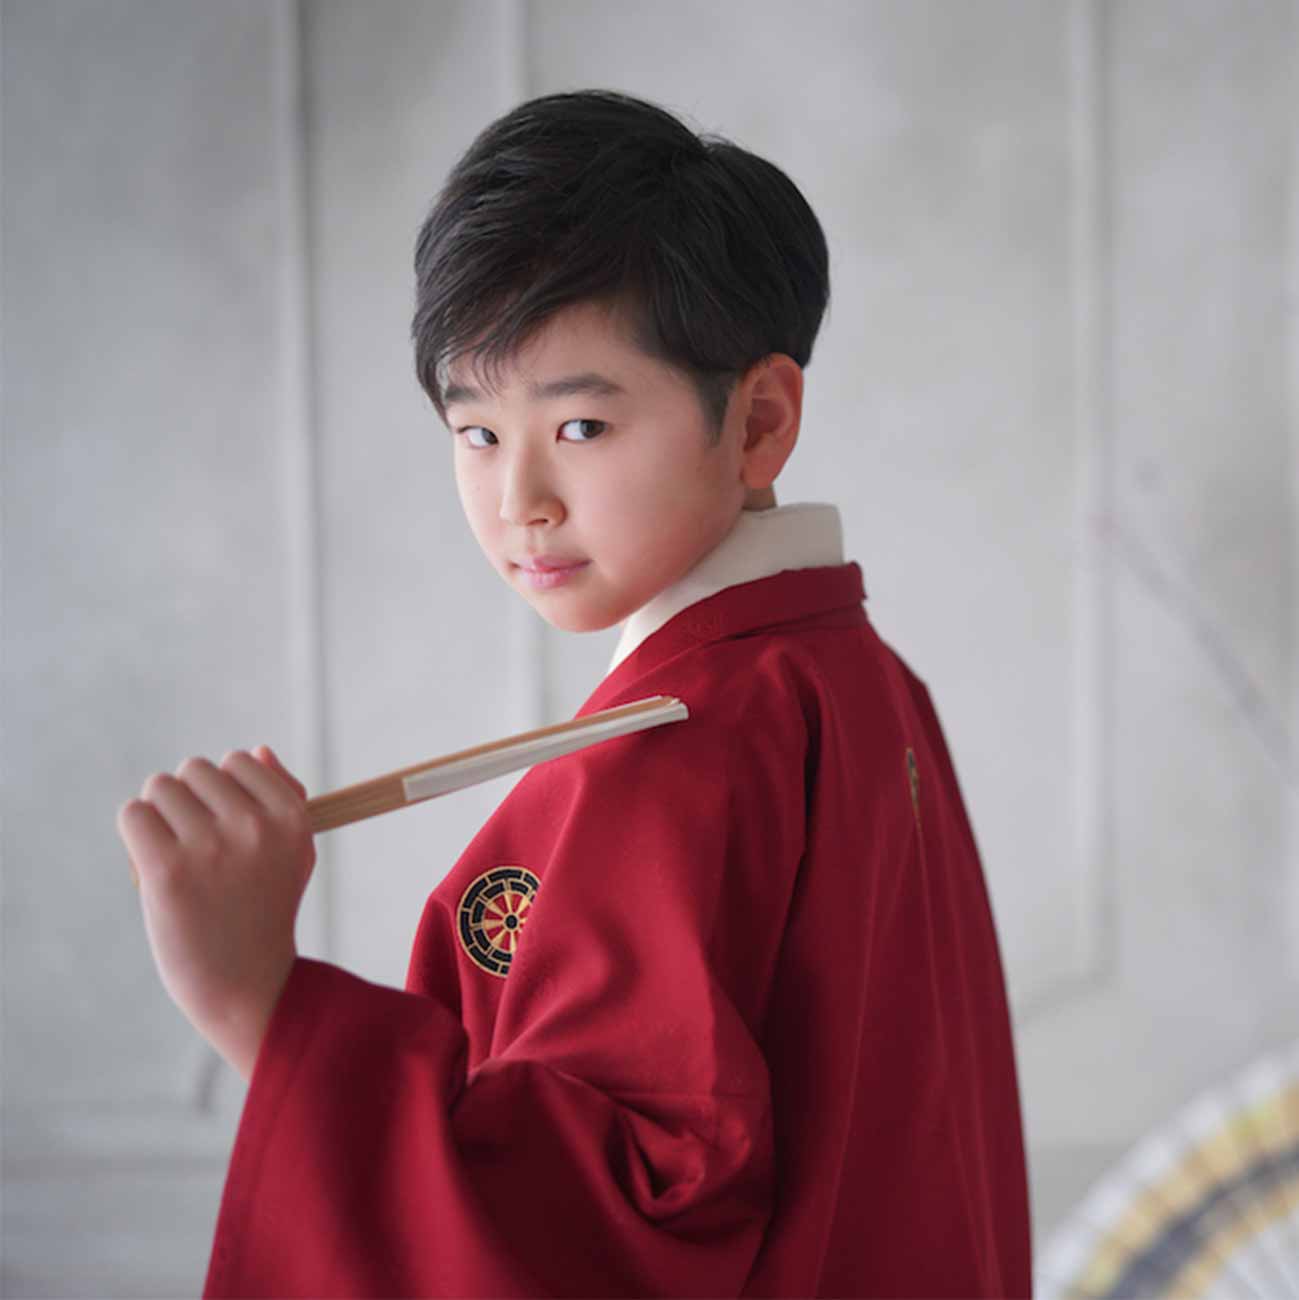 赤い袴を着た男の子の写真